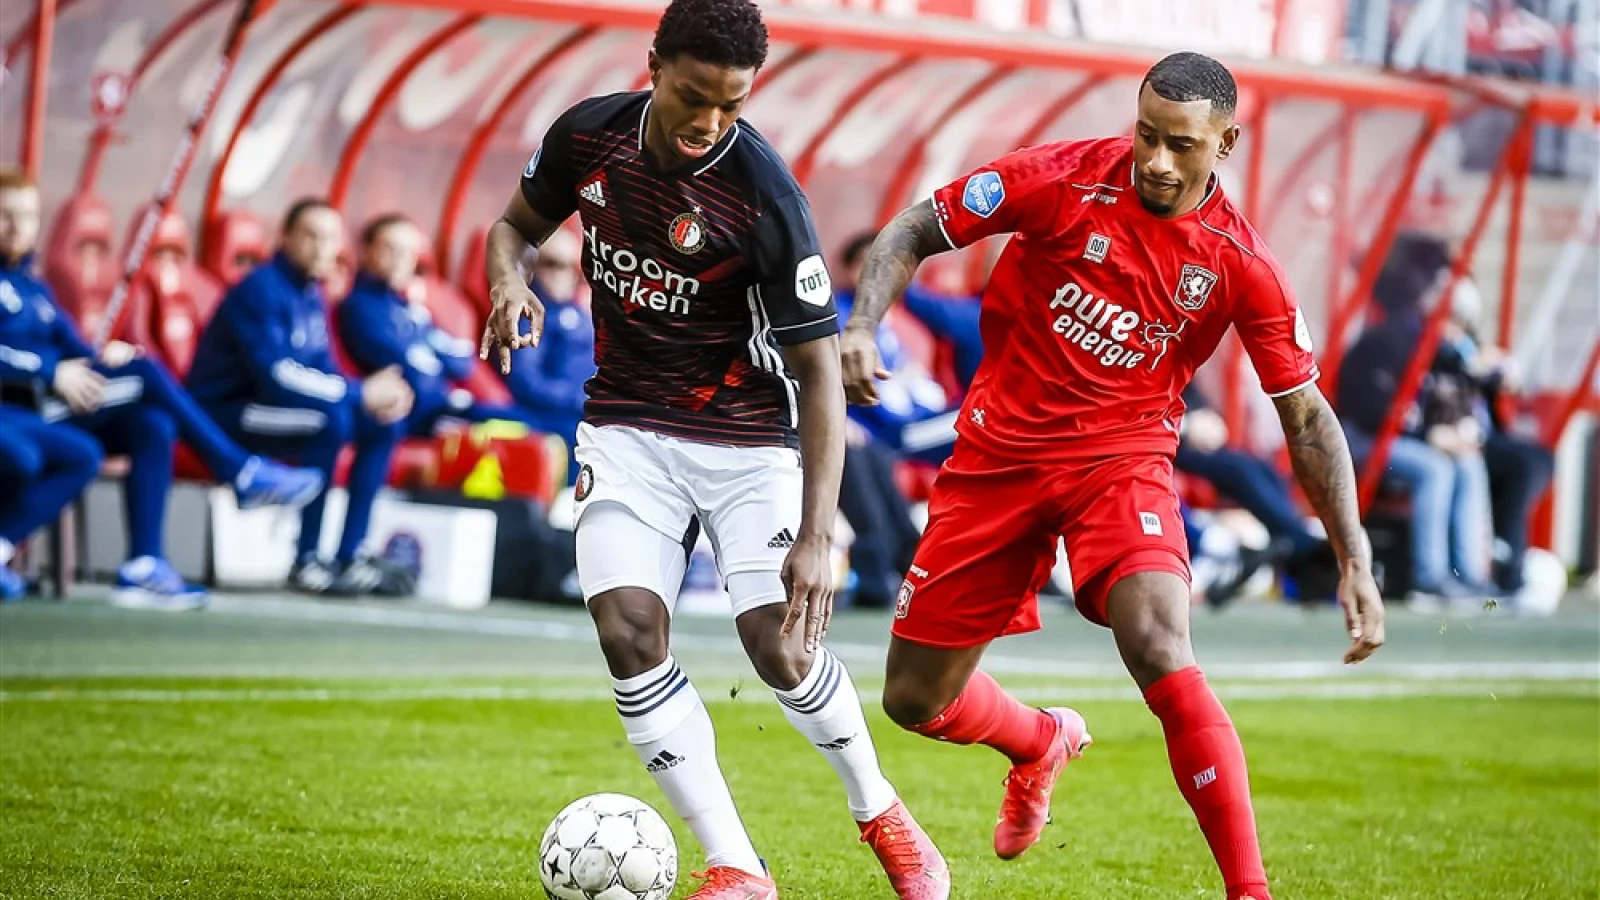 LIVE | FC Twente - Feyenoord 2-2 | Einde wedstrijd